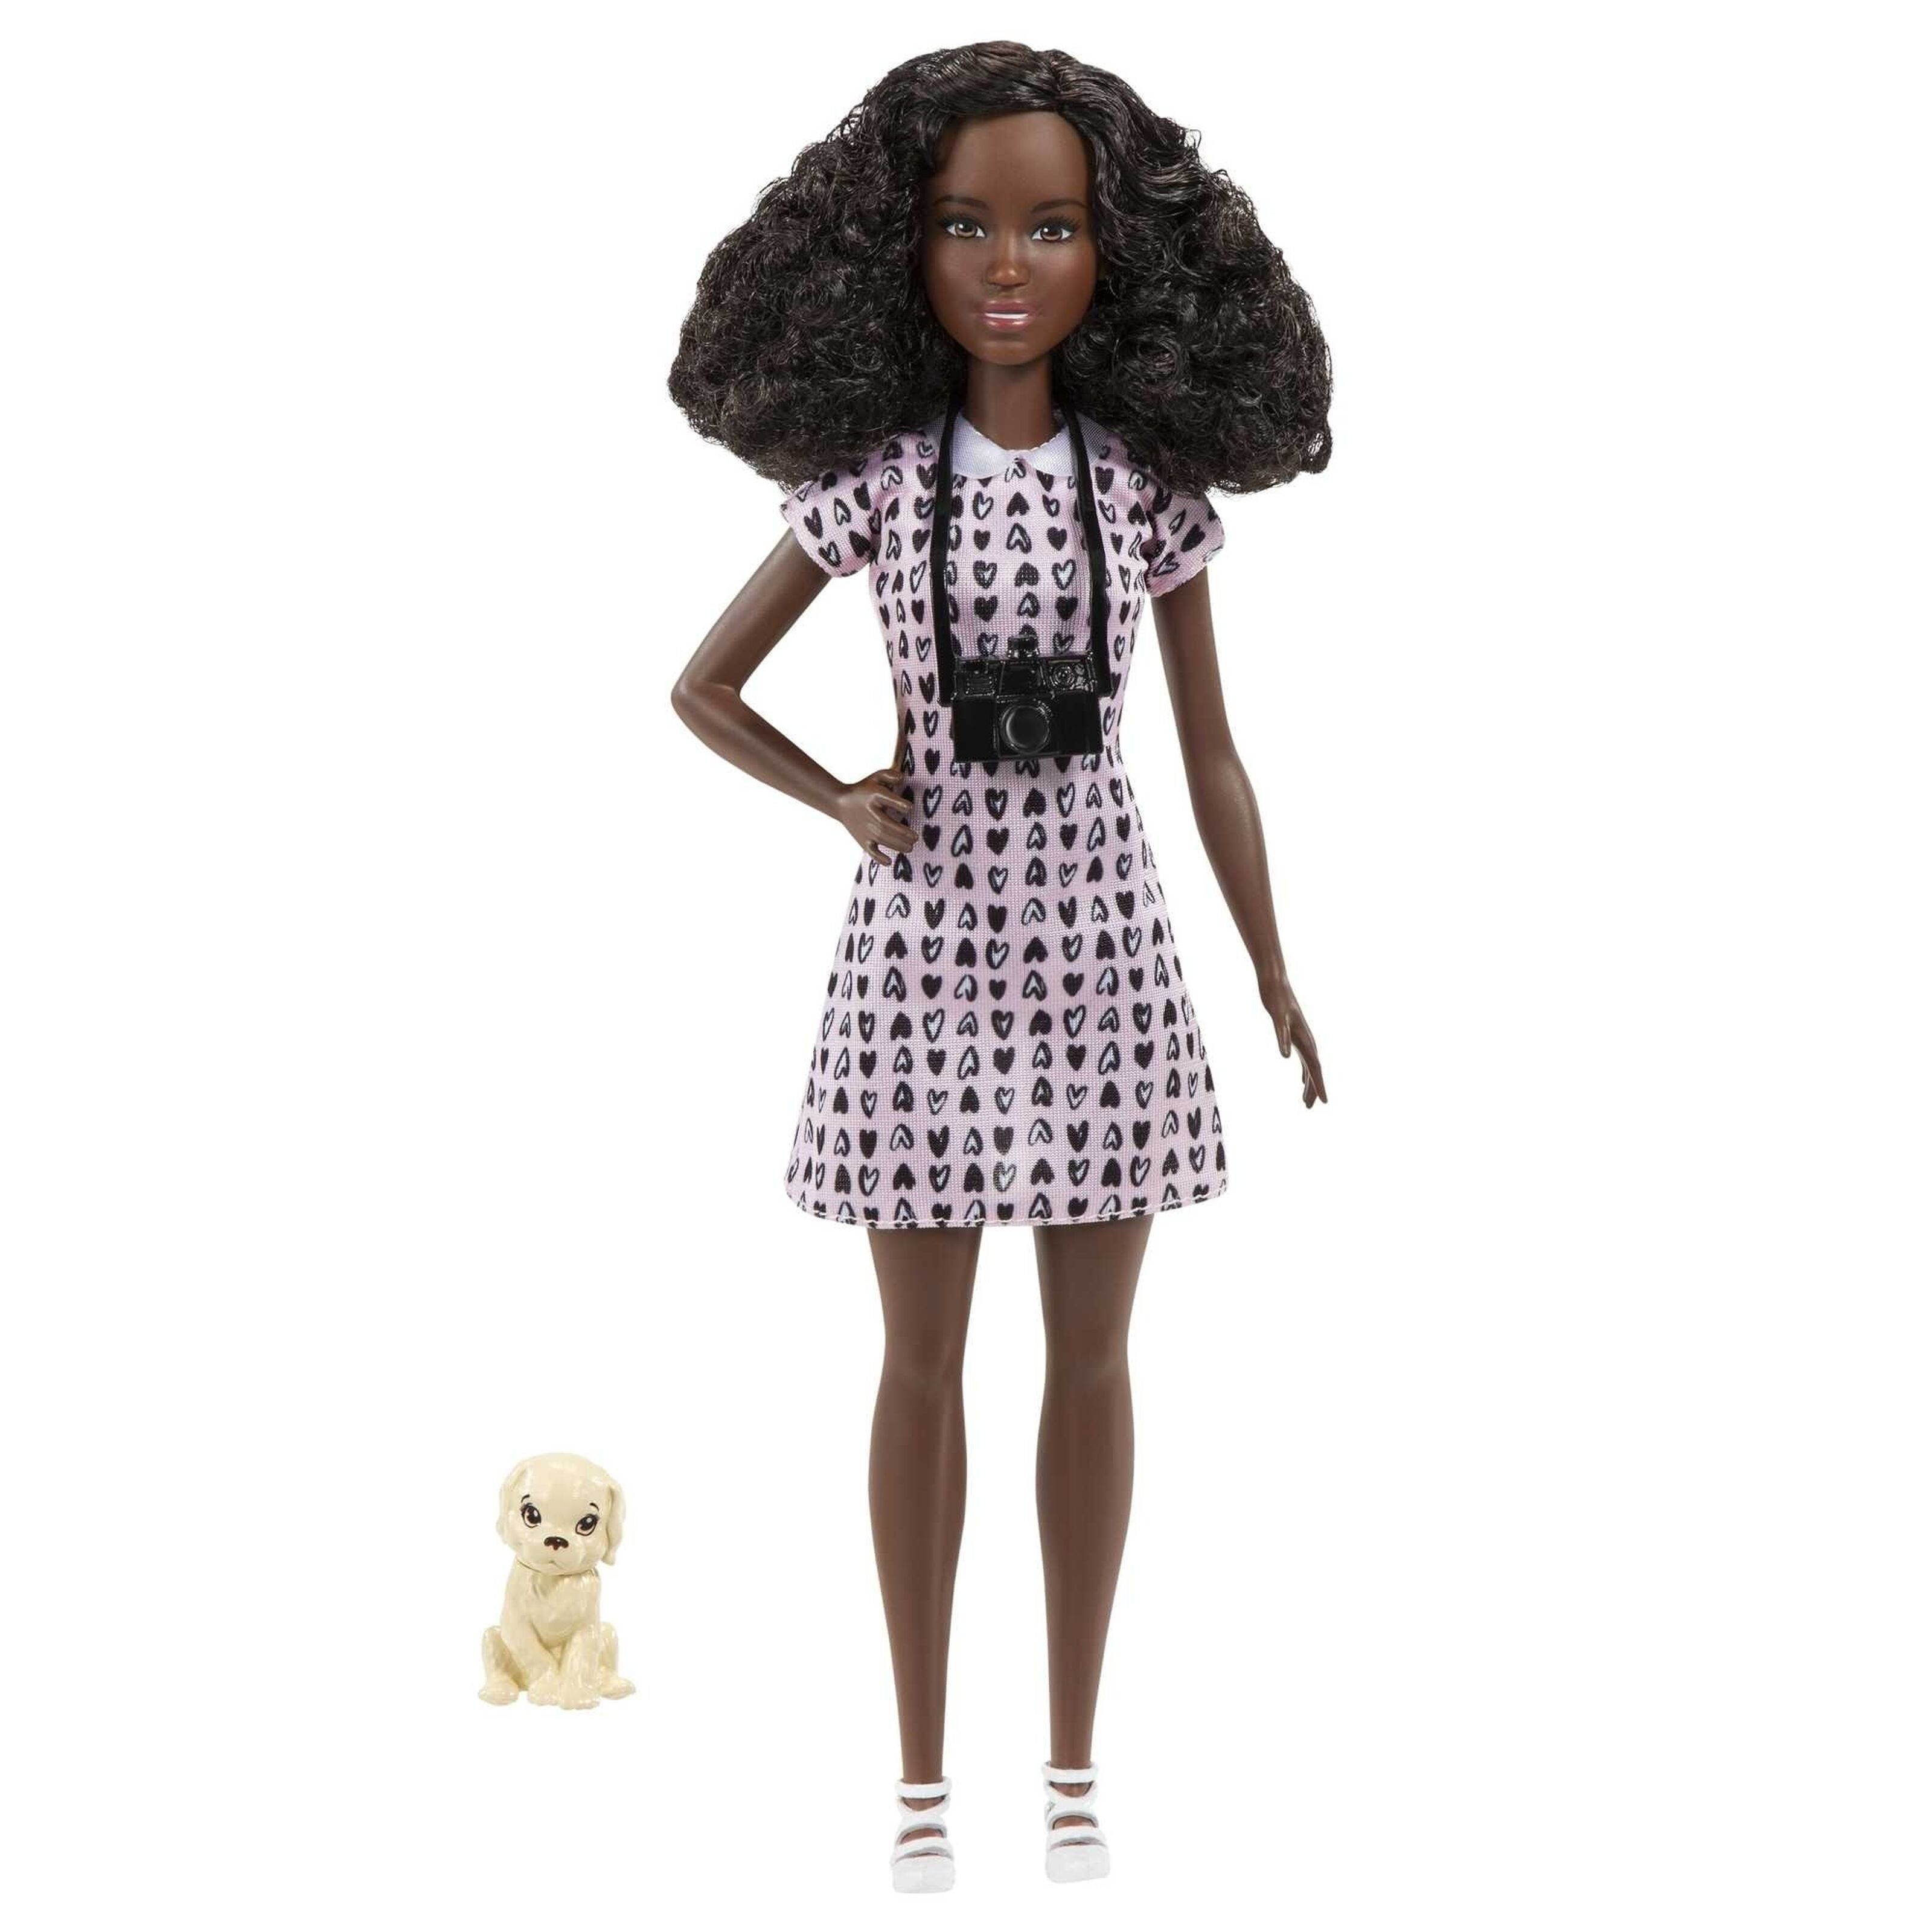 Coffret pour Barbie bouttique de pâtisserie : poupée Mannequin + St